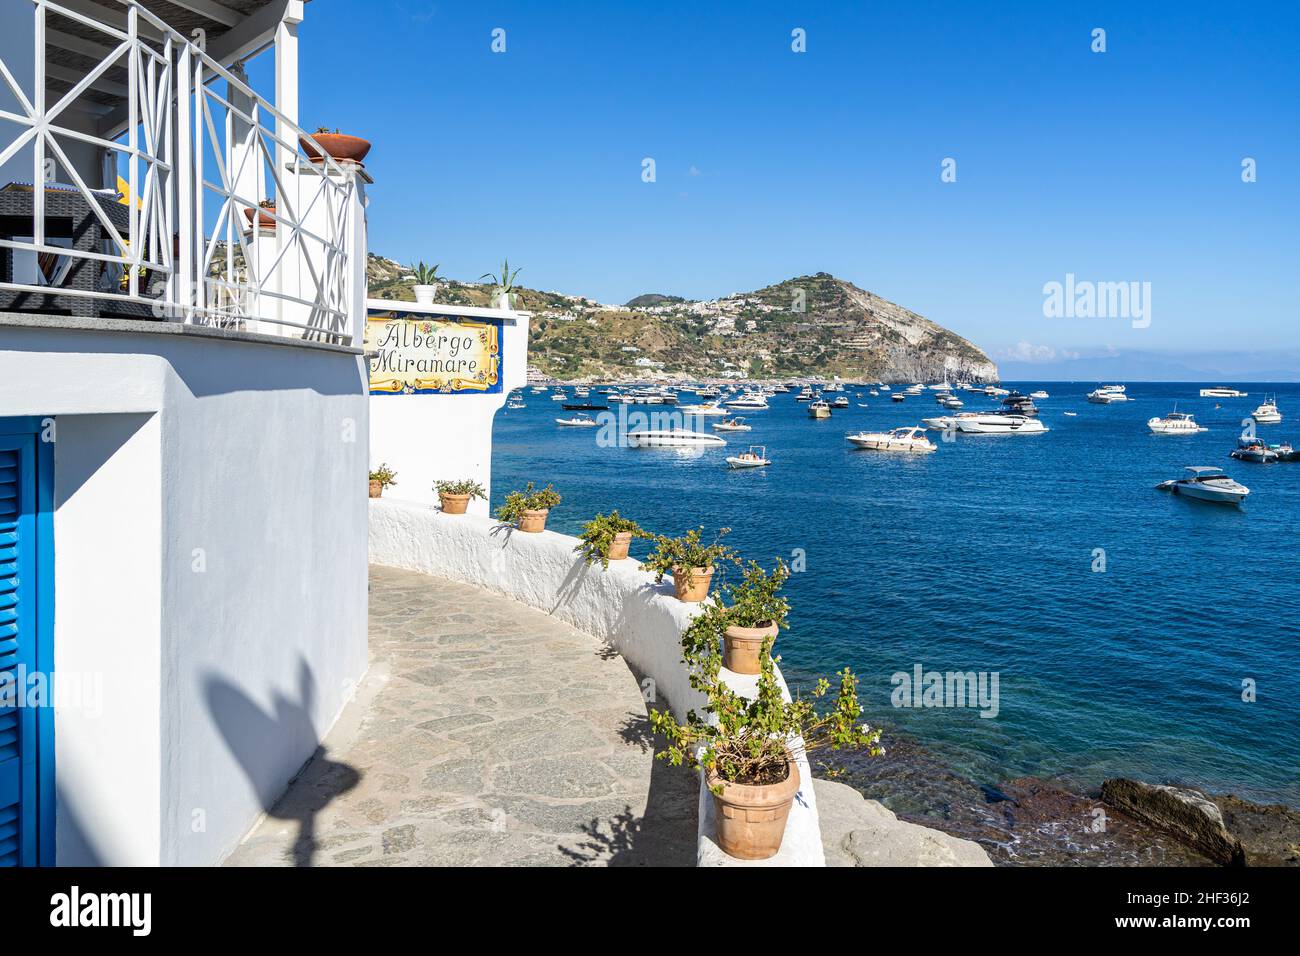 Un hôtel sur Ischia avec une vue imprenable sur la plage de Maronti, l'un des plus populaires de l'île.Ischia, Italie, septembre 2021 Banque D'Images